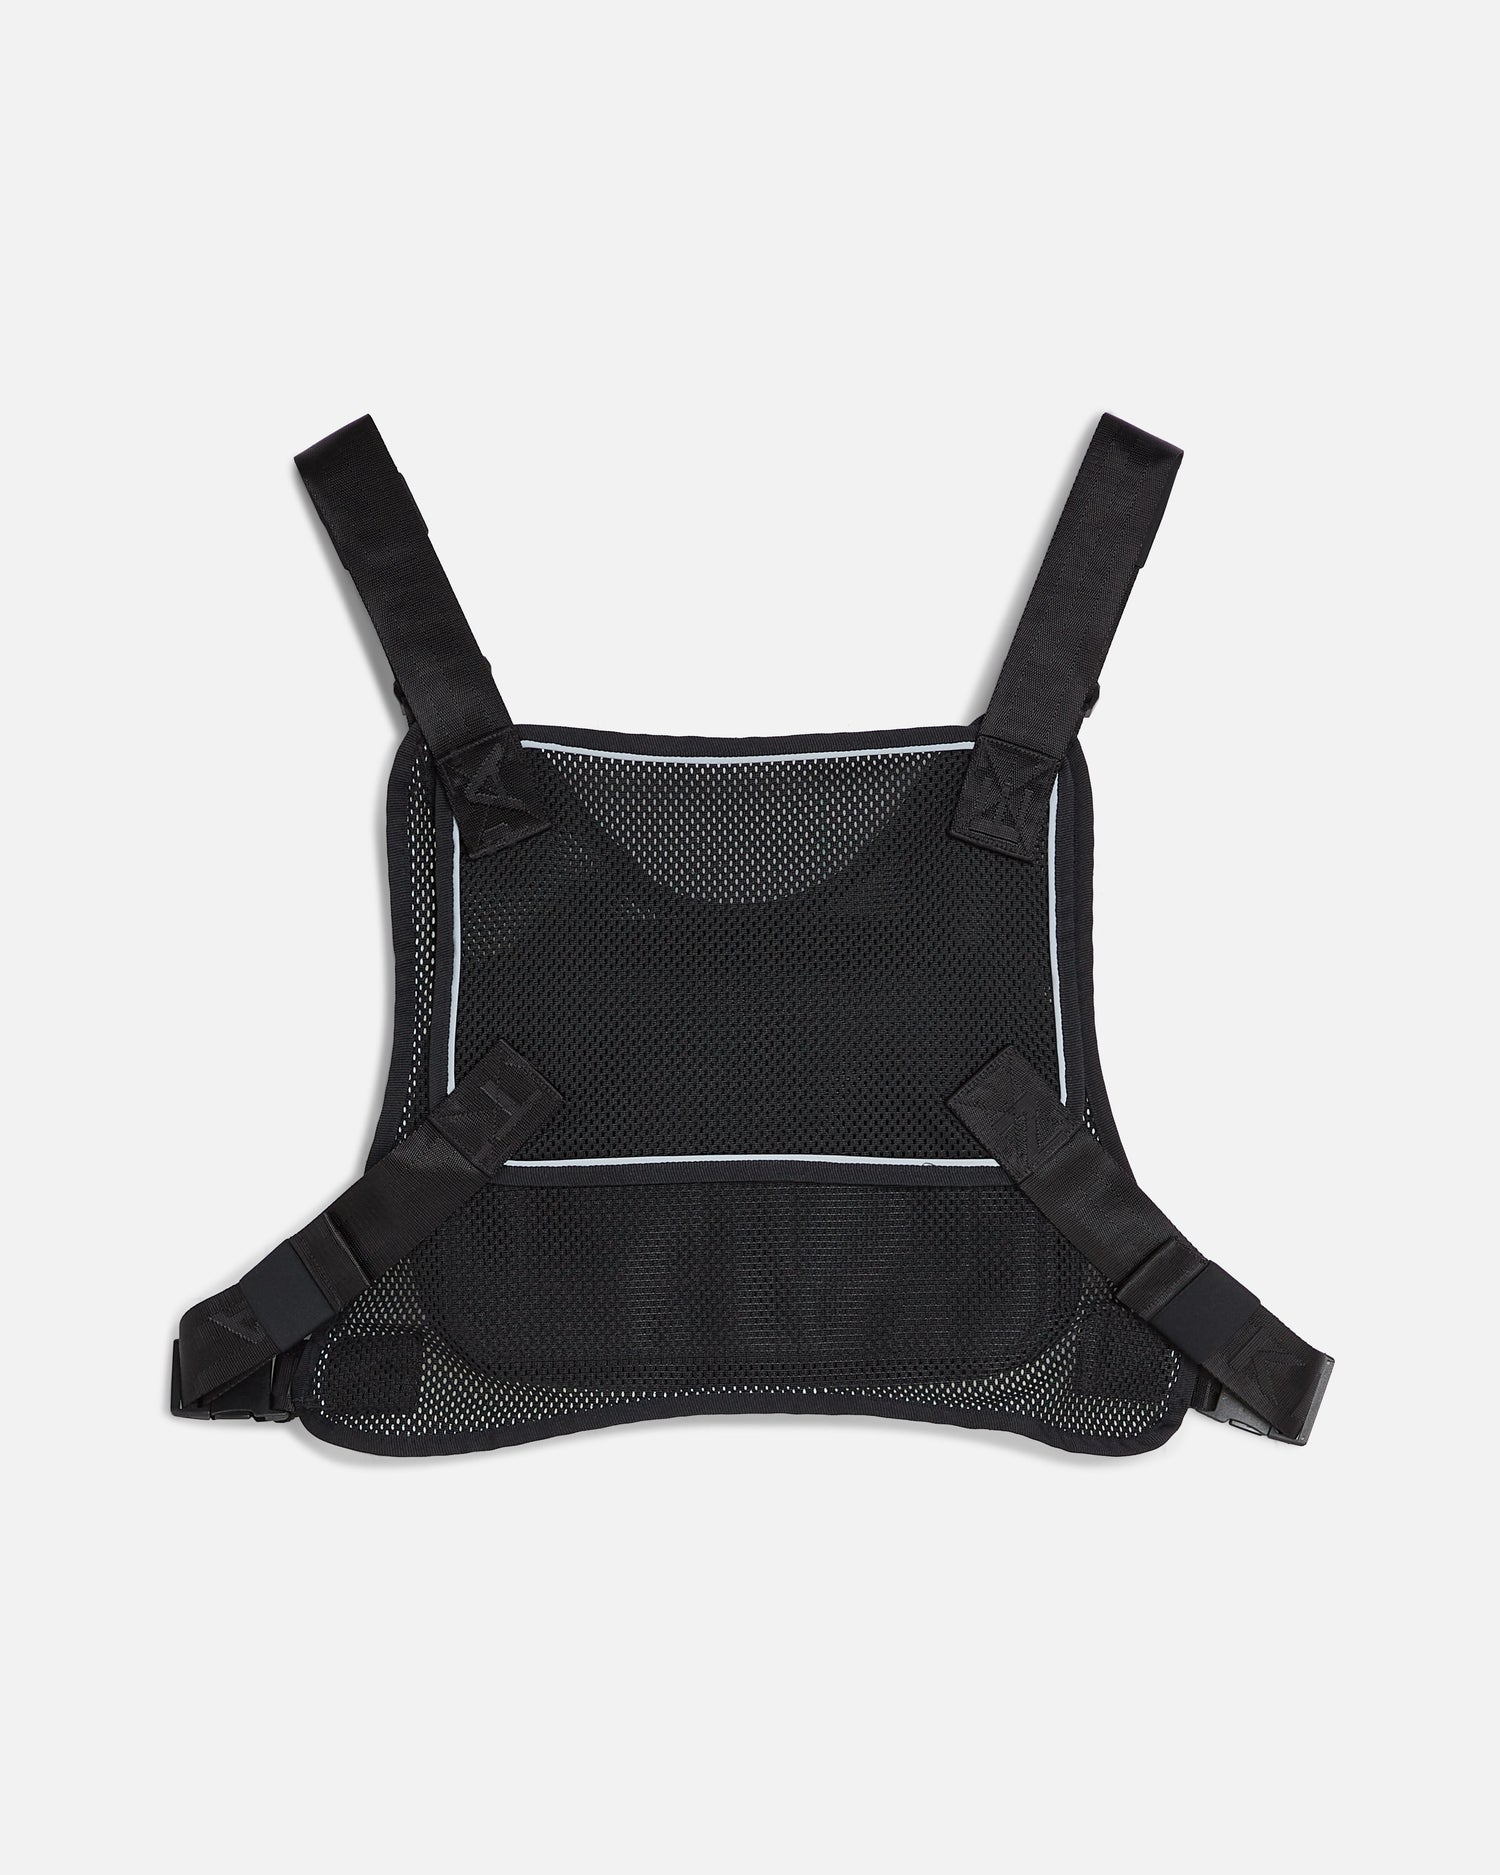 Nike x Patta Running Team Rig Vest (Black)